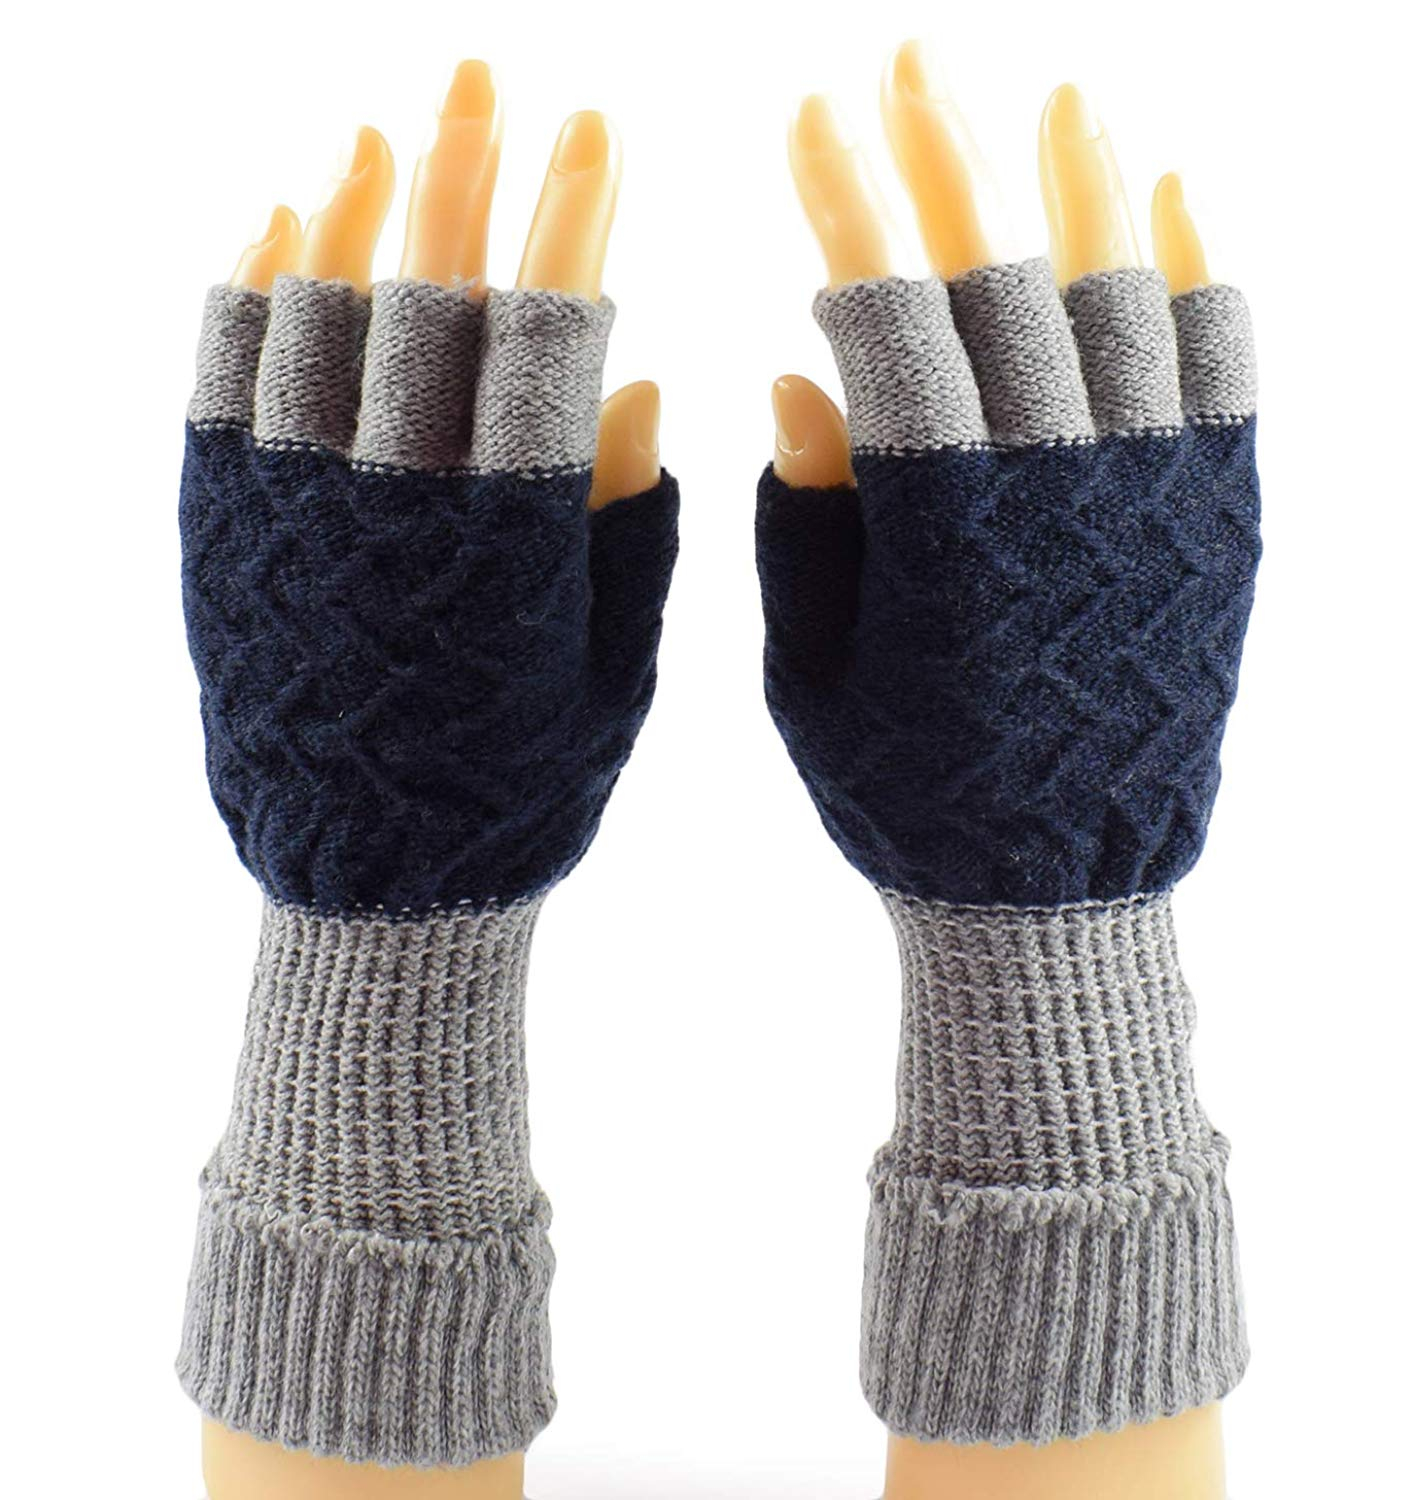 Mens Fingerless Gloves Knitting Pattern Cheap Mens Knit Fingerless Gloves Find Mens Knit Fingerless Gloves